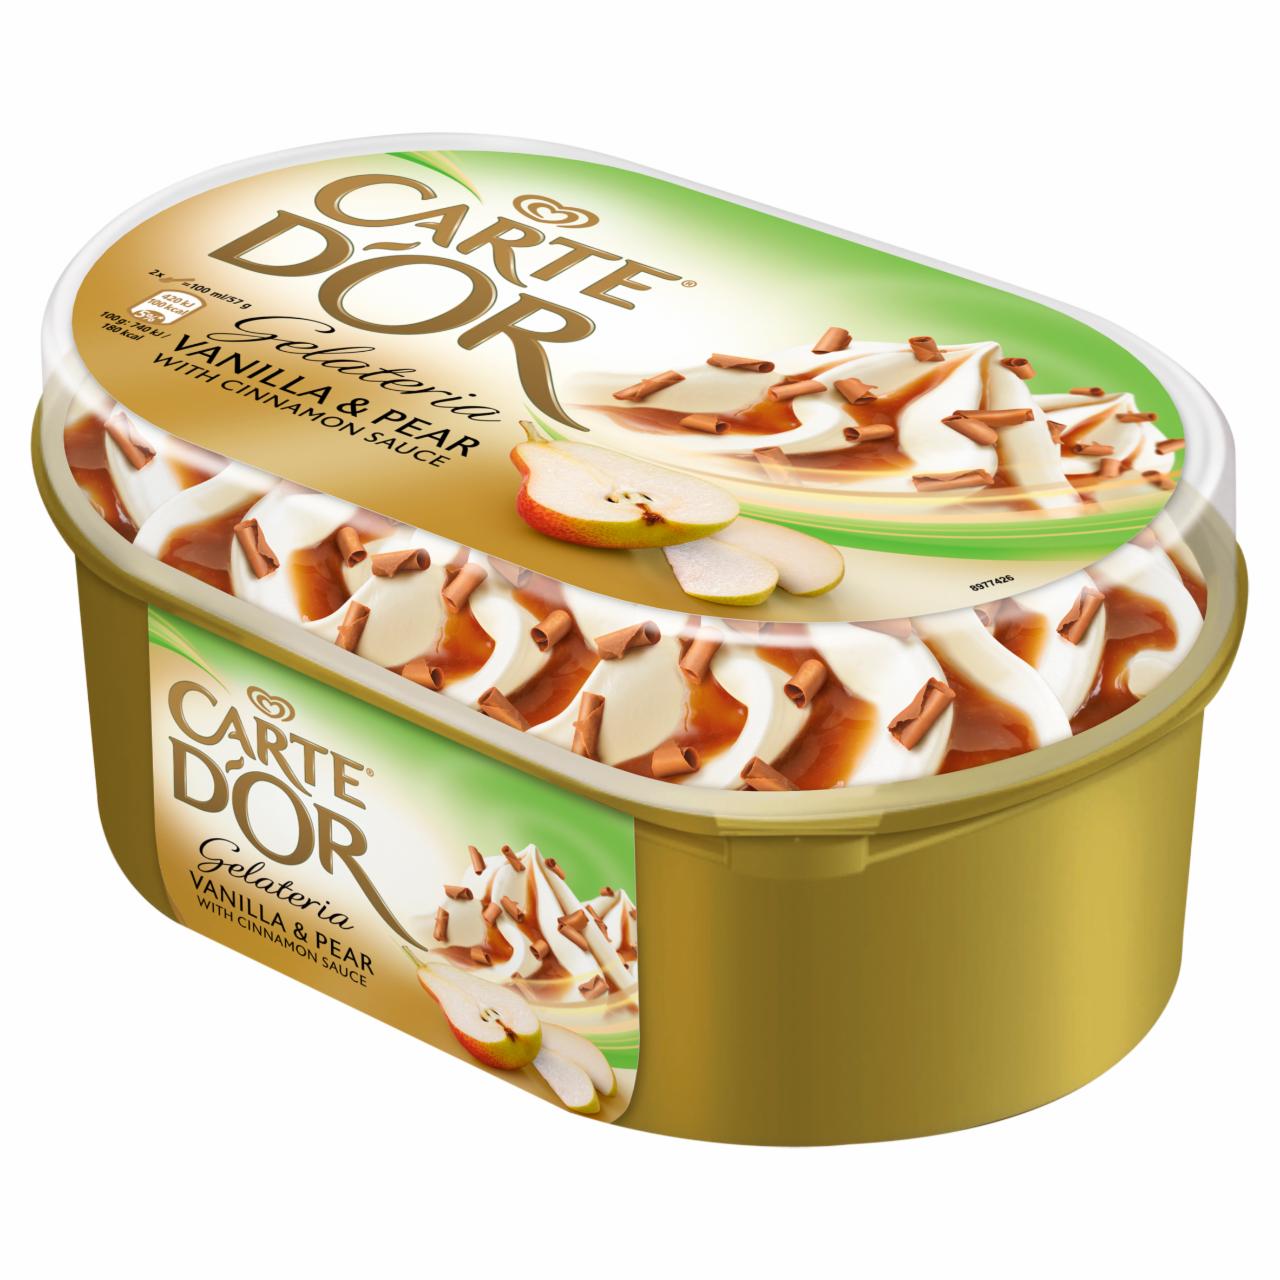 Képek - Carte D'Or vanília jégkrém és körte szorbé fahéjas karamell szósszal 900 ml